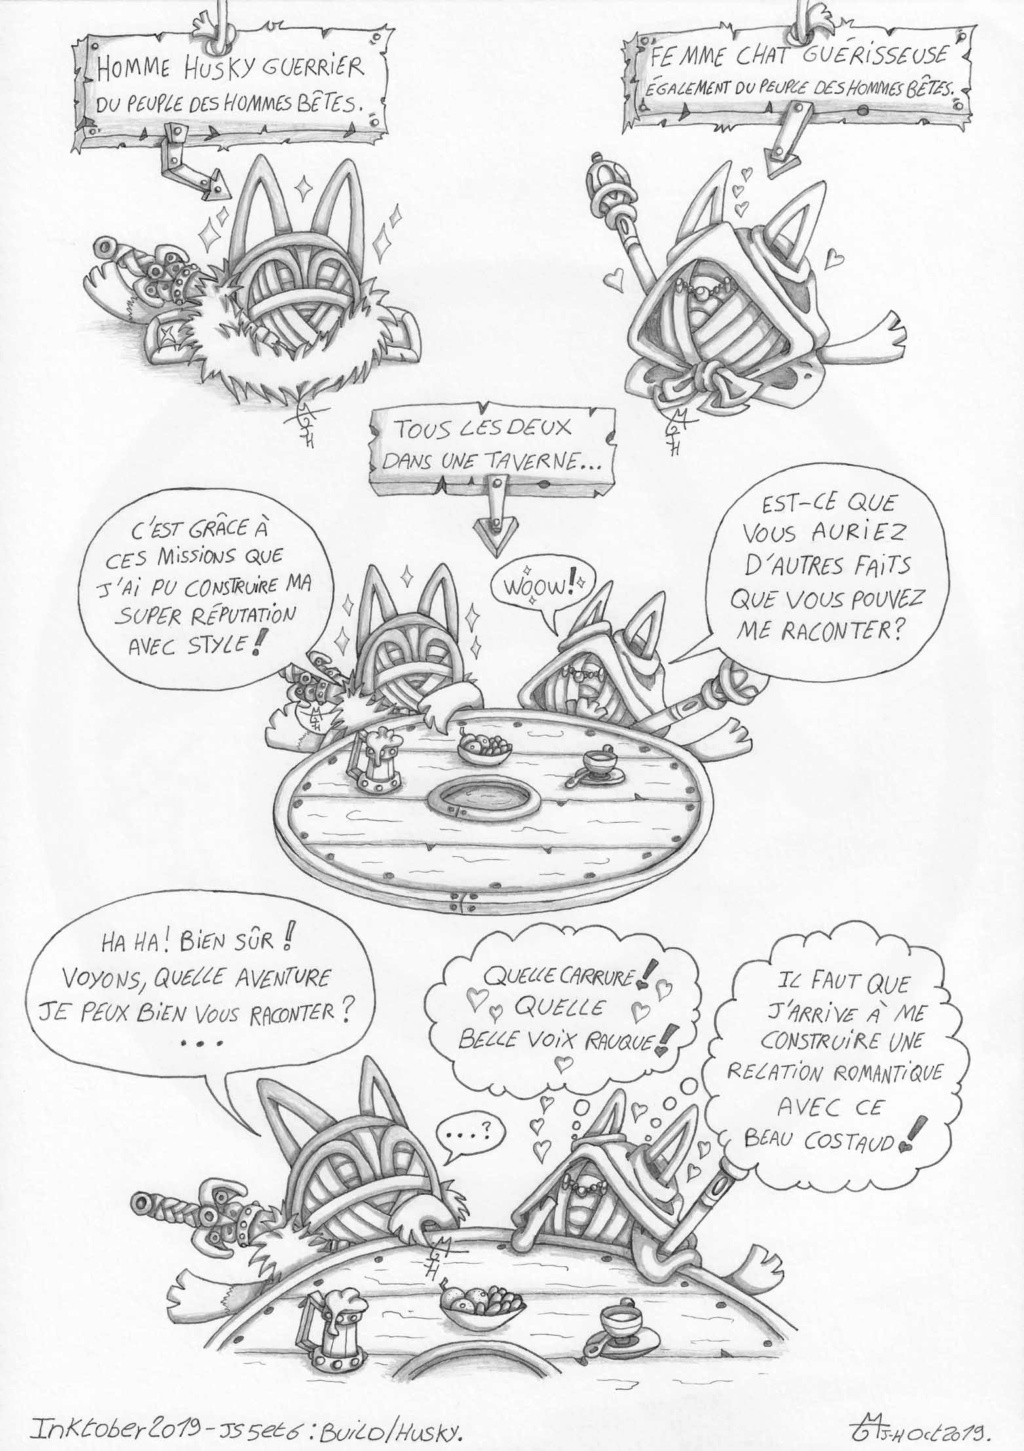 Les Pelotes de JH la Chapeautée - Page 5 J5__6_11